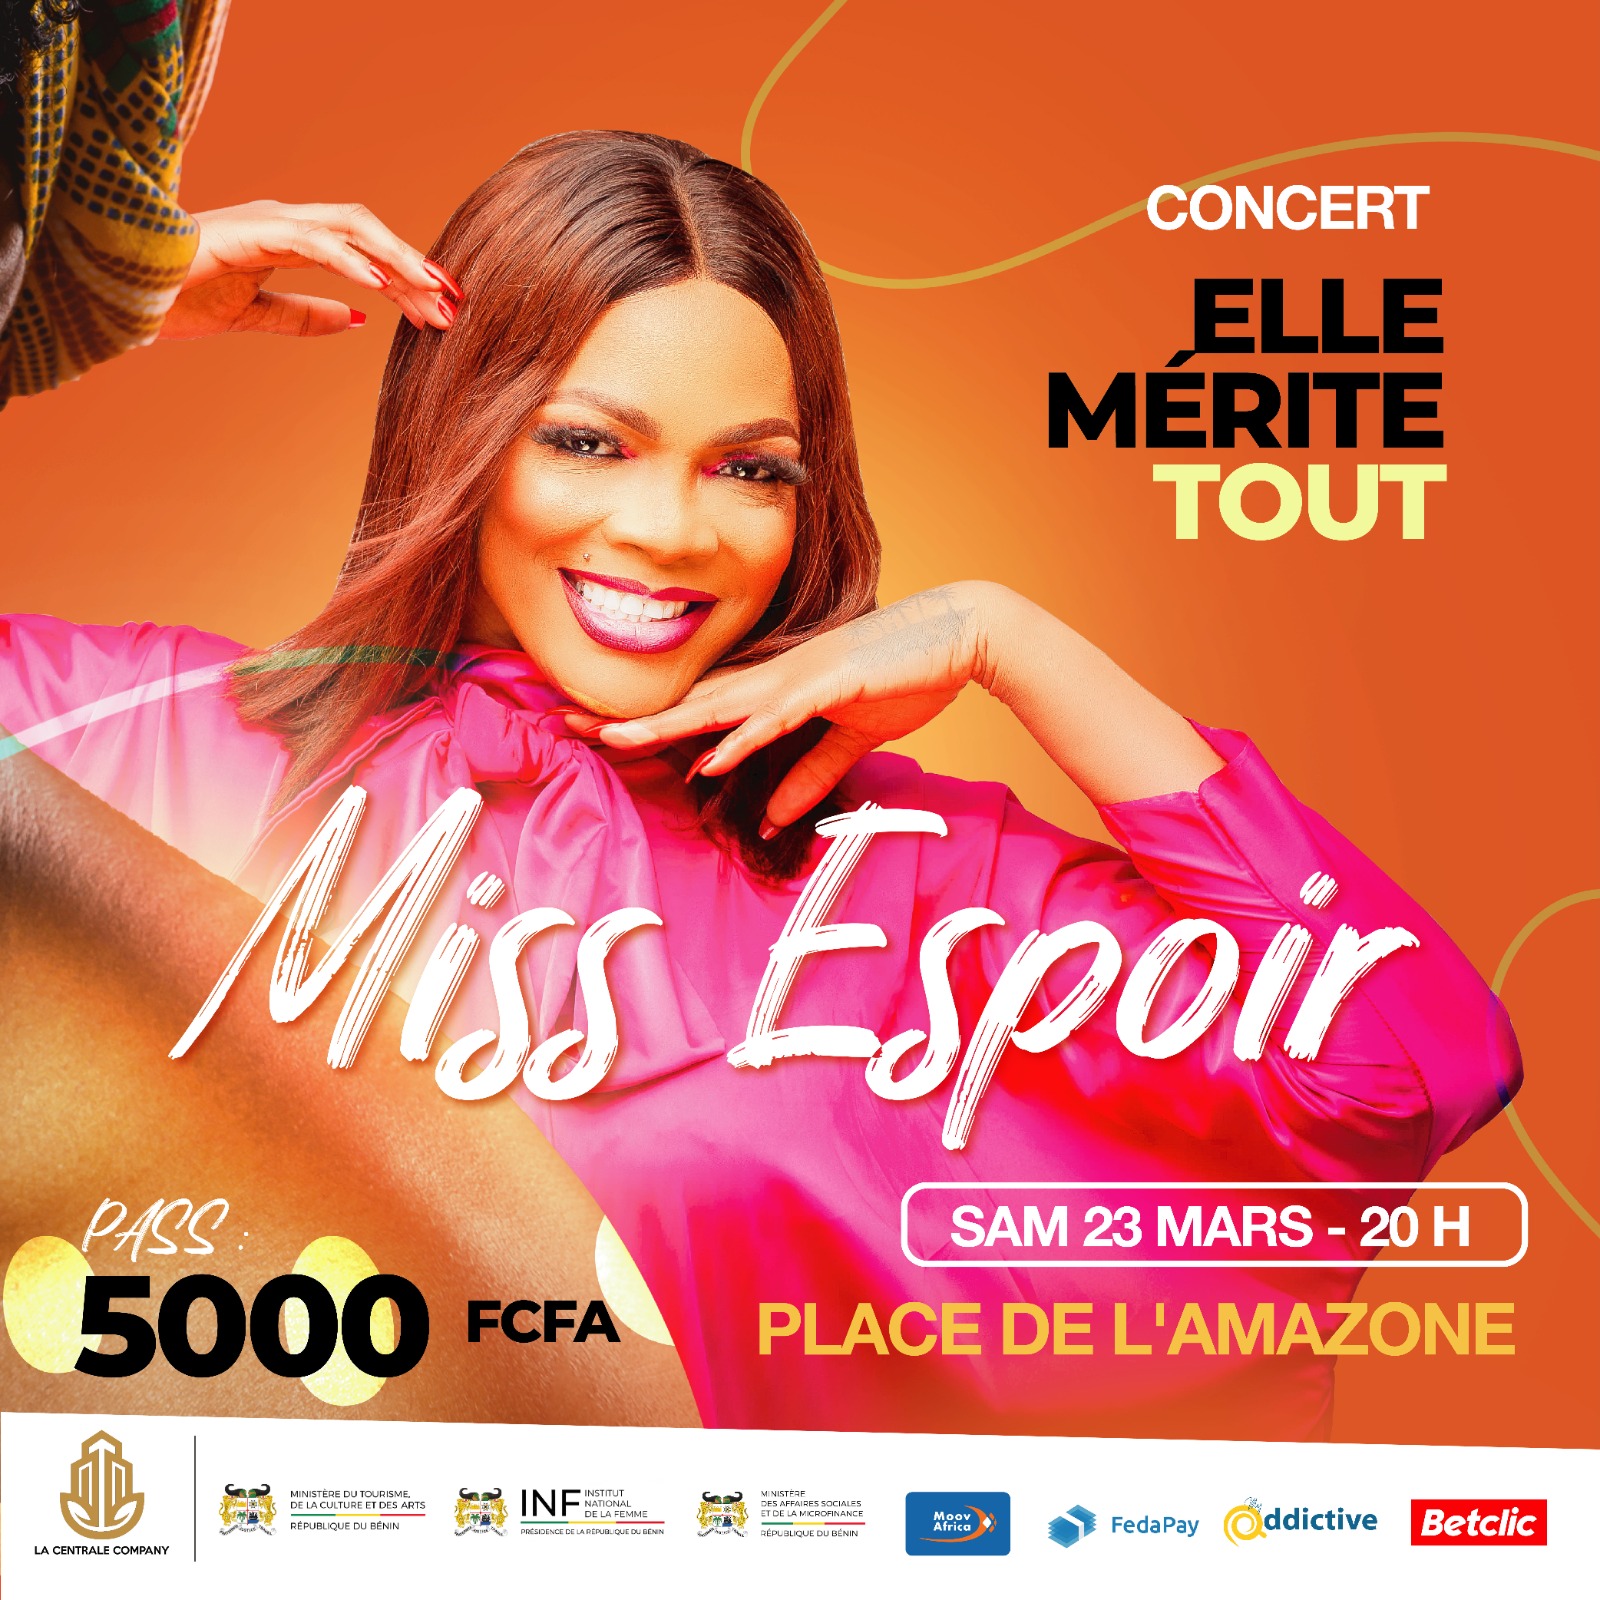 L’artiste Miss Espoir attendue sur le Géant concert « Elle mérite tout » de ce samedi